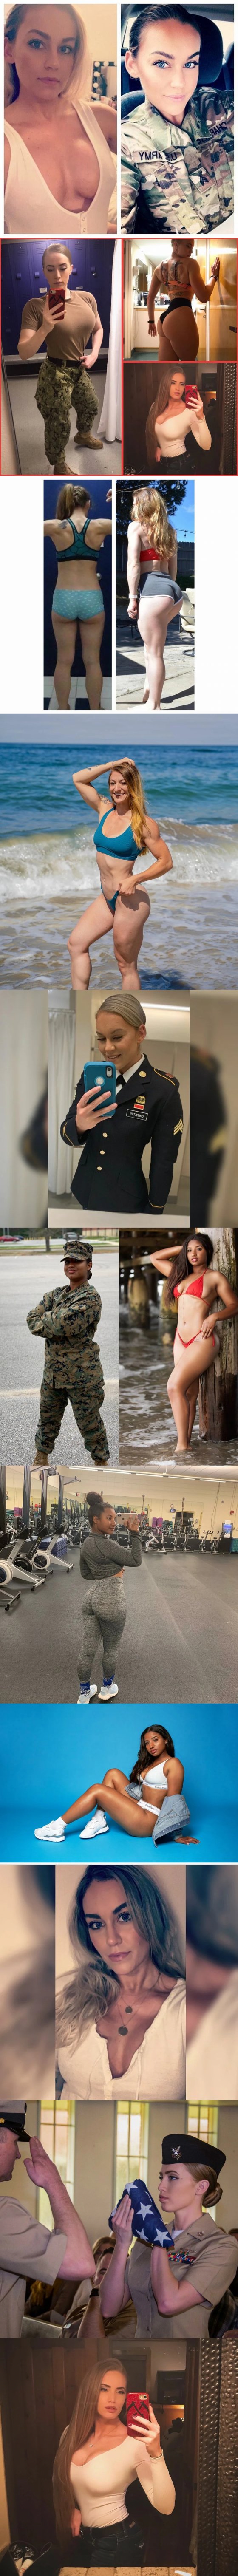 ამერიკელი სამხედრო ქალები ფორმით და საცურაო კოსტუმებში. კოლაჟი